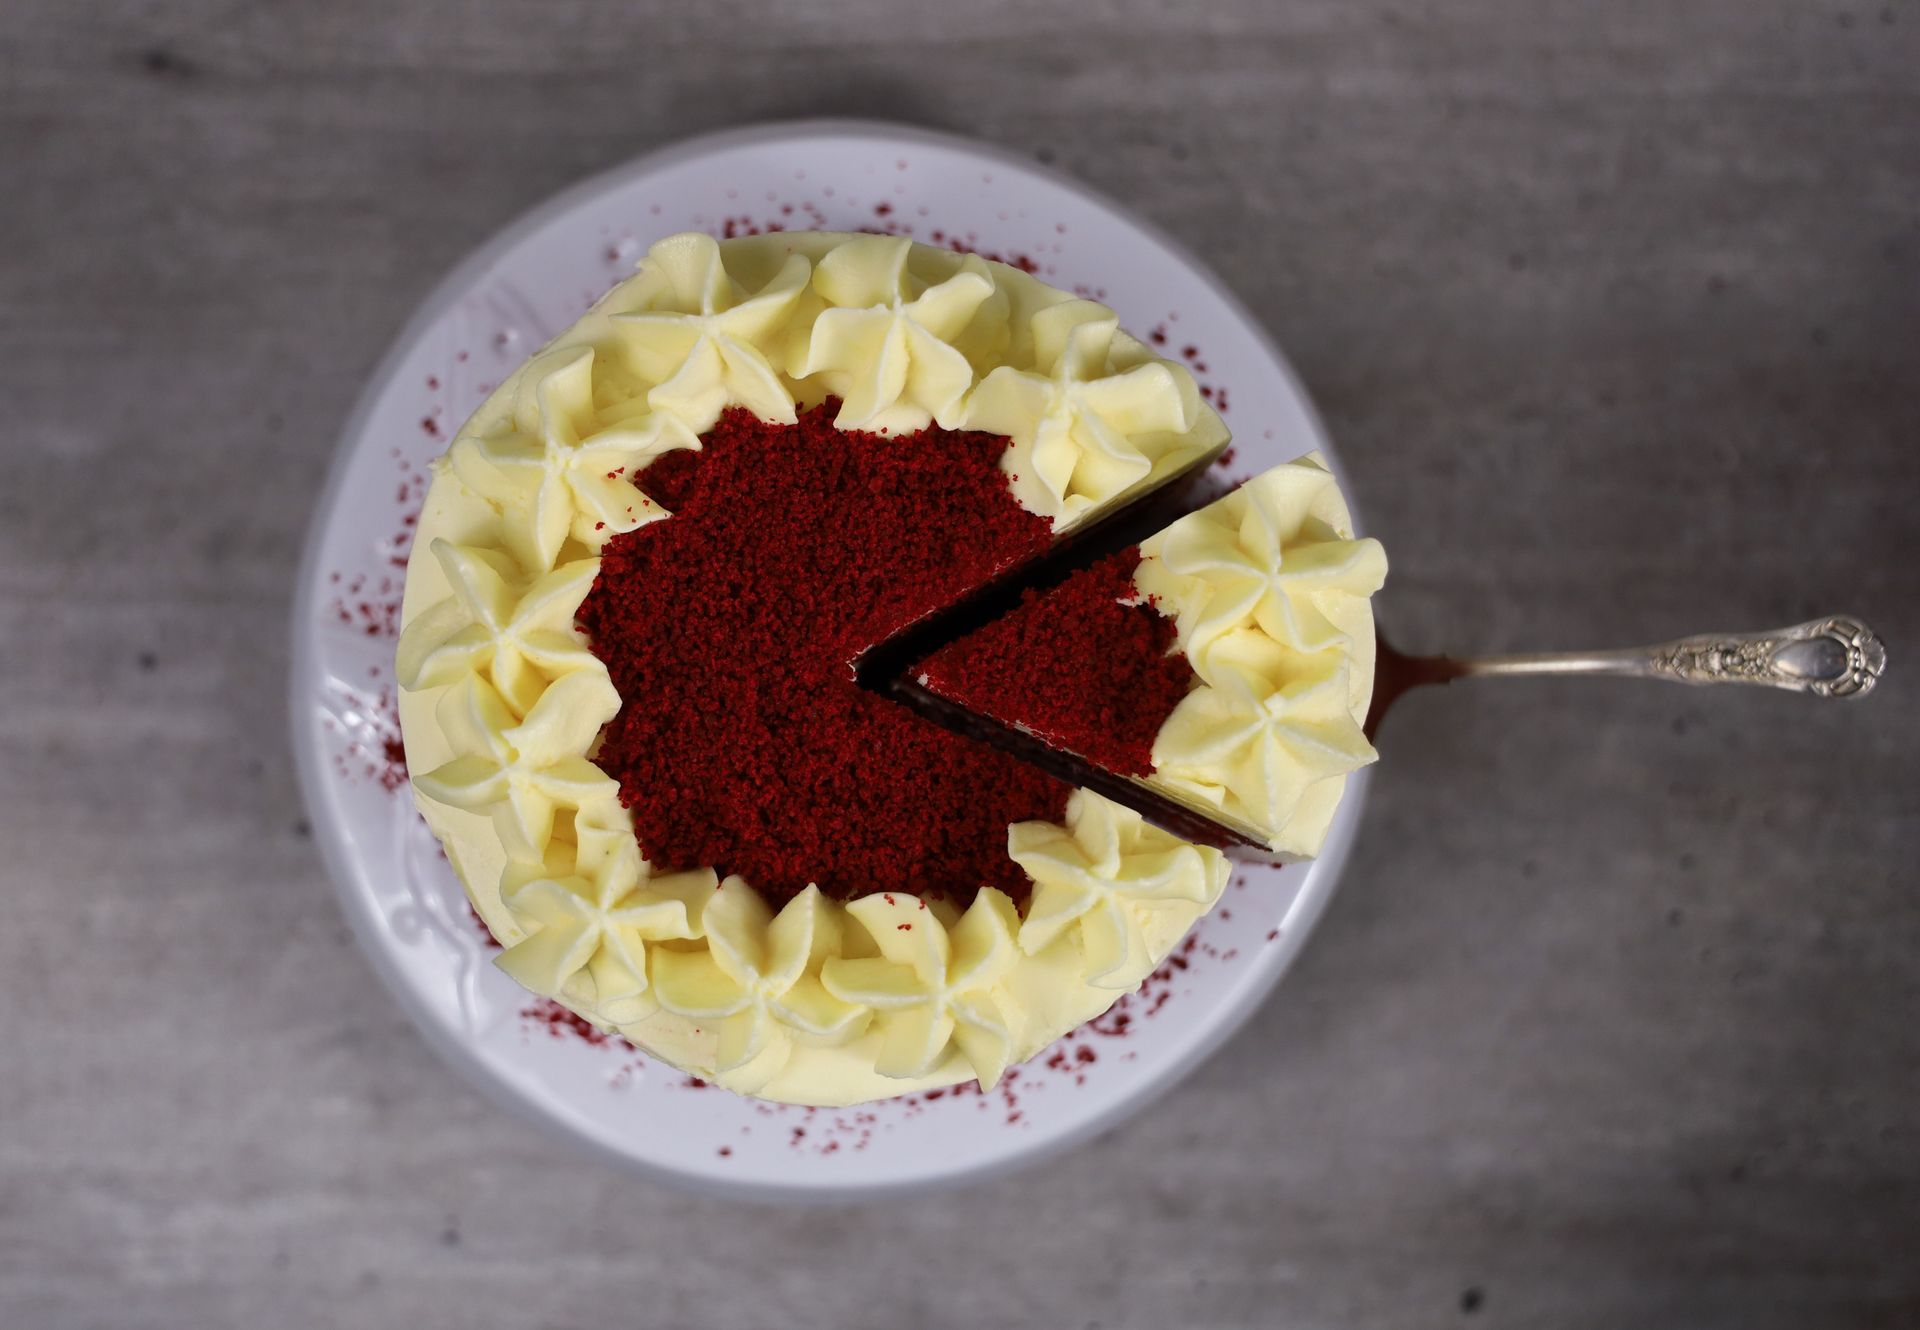 best red velvet cake.jpg